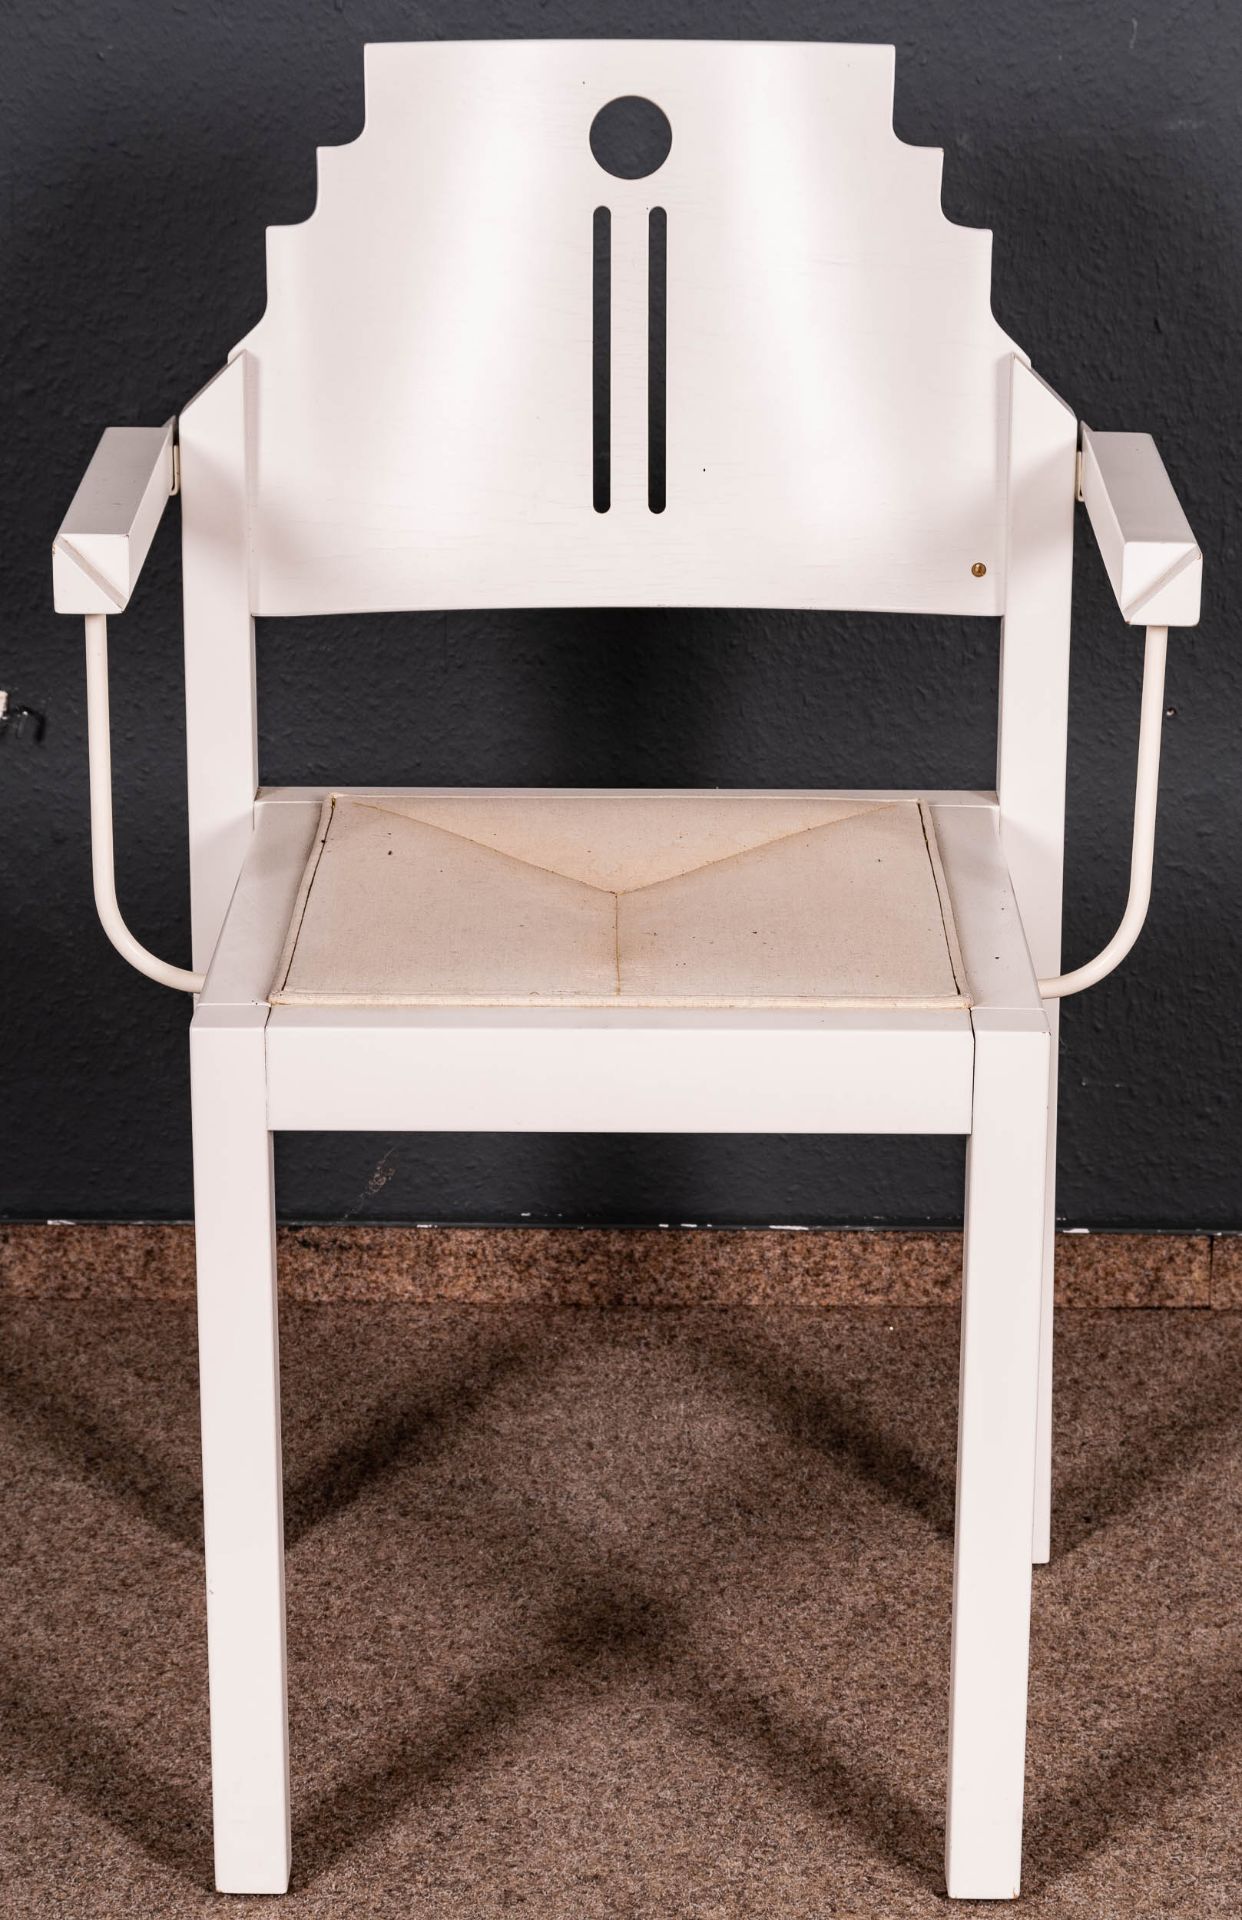 Folge von 8 Armlehnstühlen, weiß lackierte Holzgestelle in nicht alltäglicher Formgebung. Ende 20. - Image 4 of 8